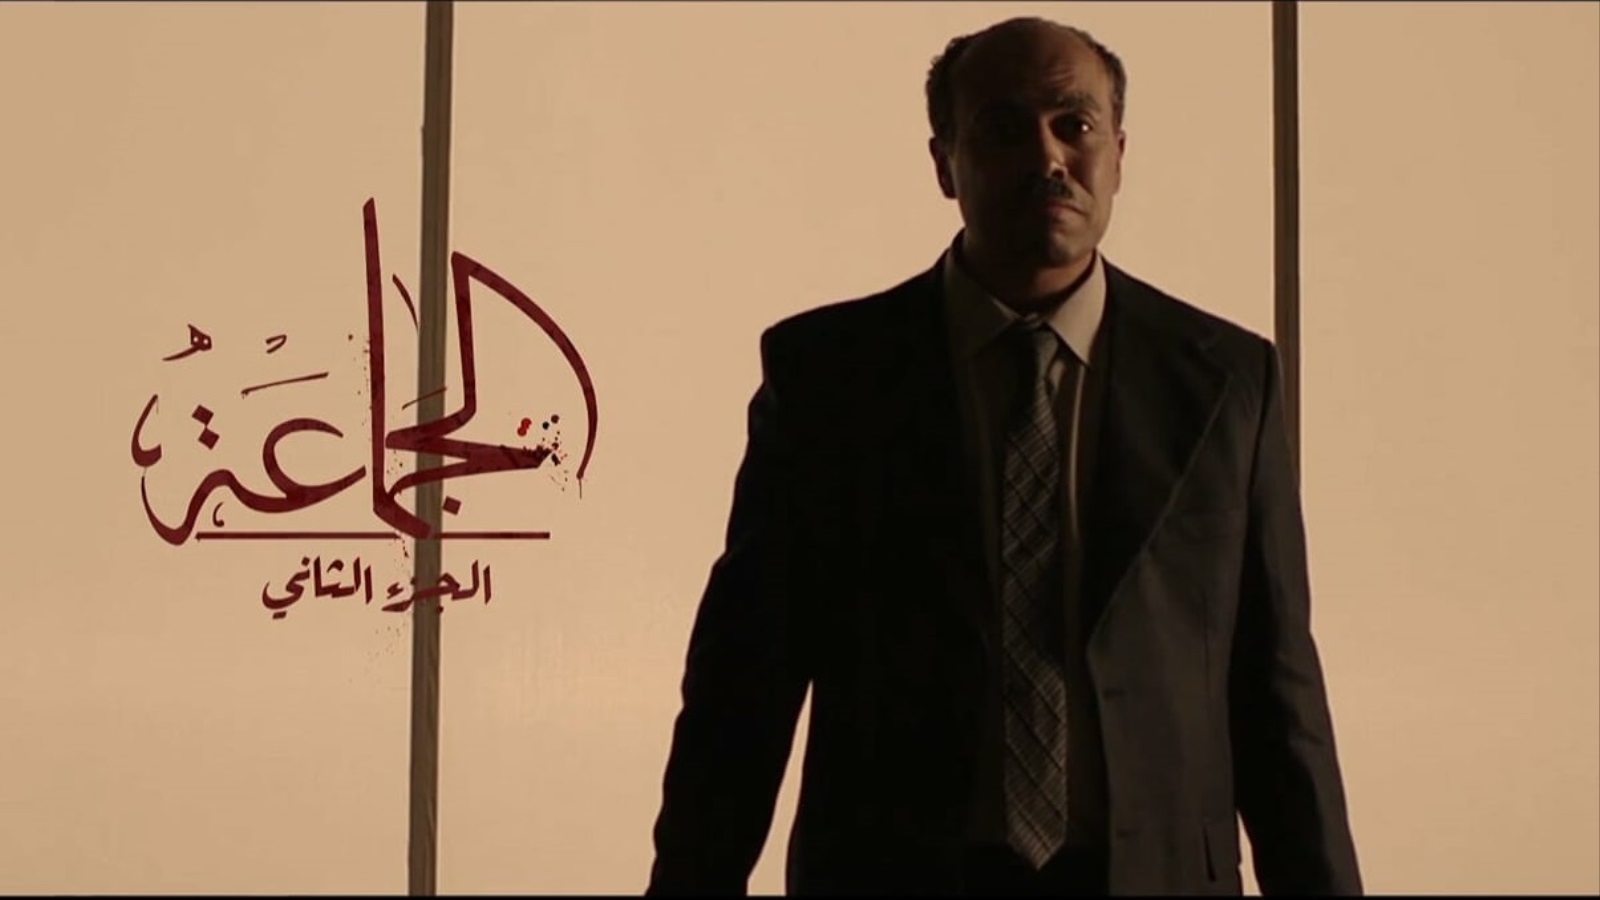  محمد فهيم بدور سيد قطب في مسلسل الجماعة (مواقع التواصل)